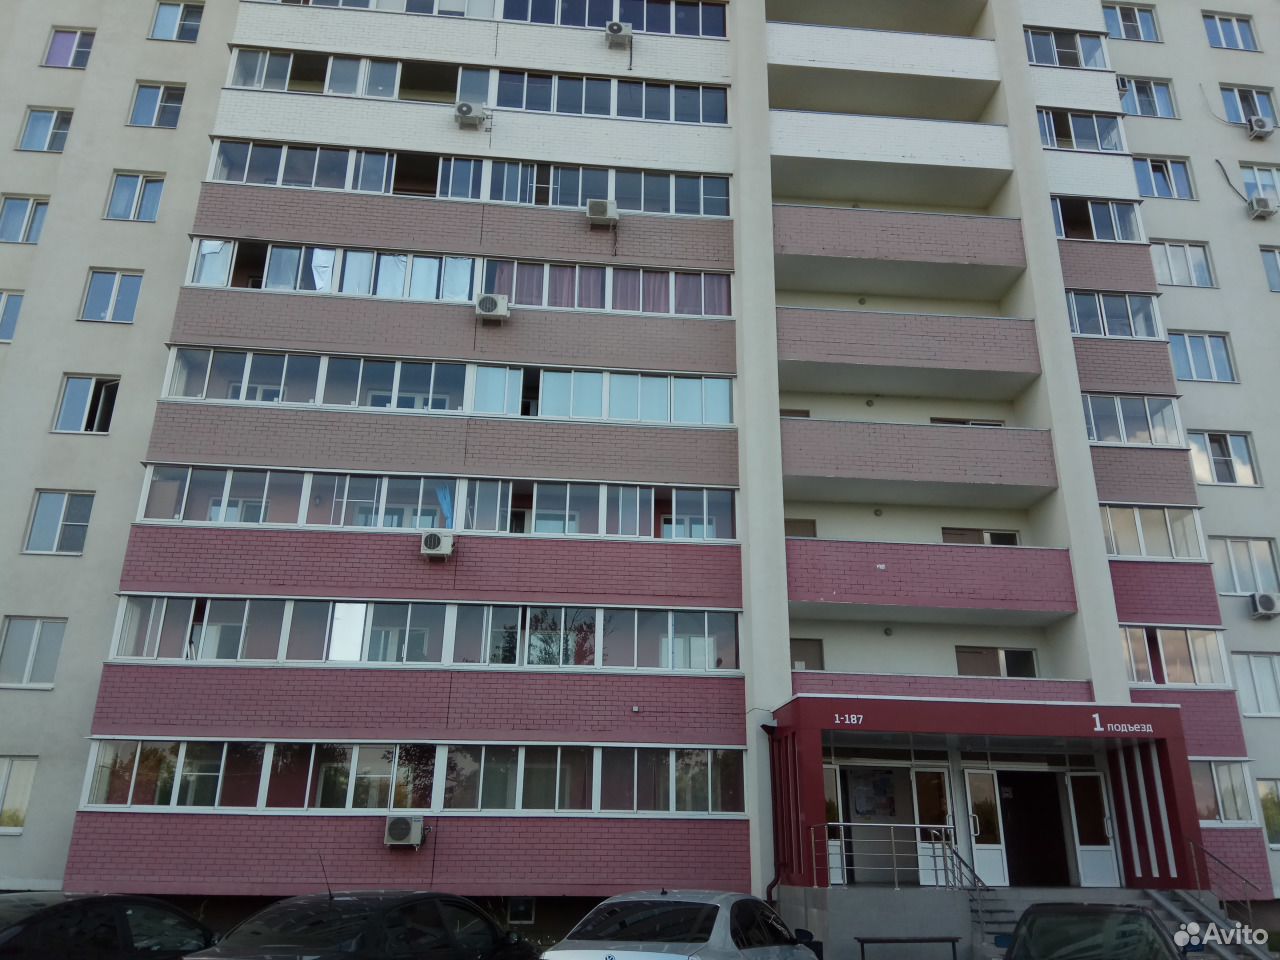 Купить квартиру в центральном районе воронежа. Продажа квартир в Центральном районе Воронежа.